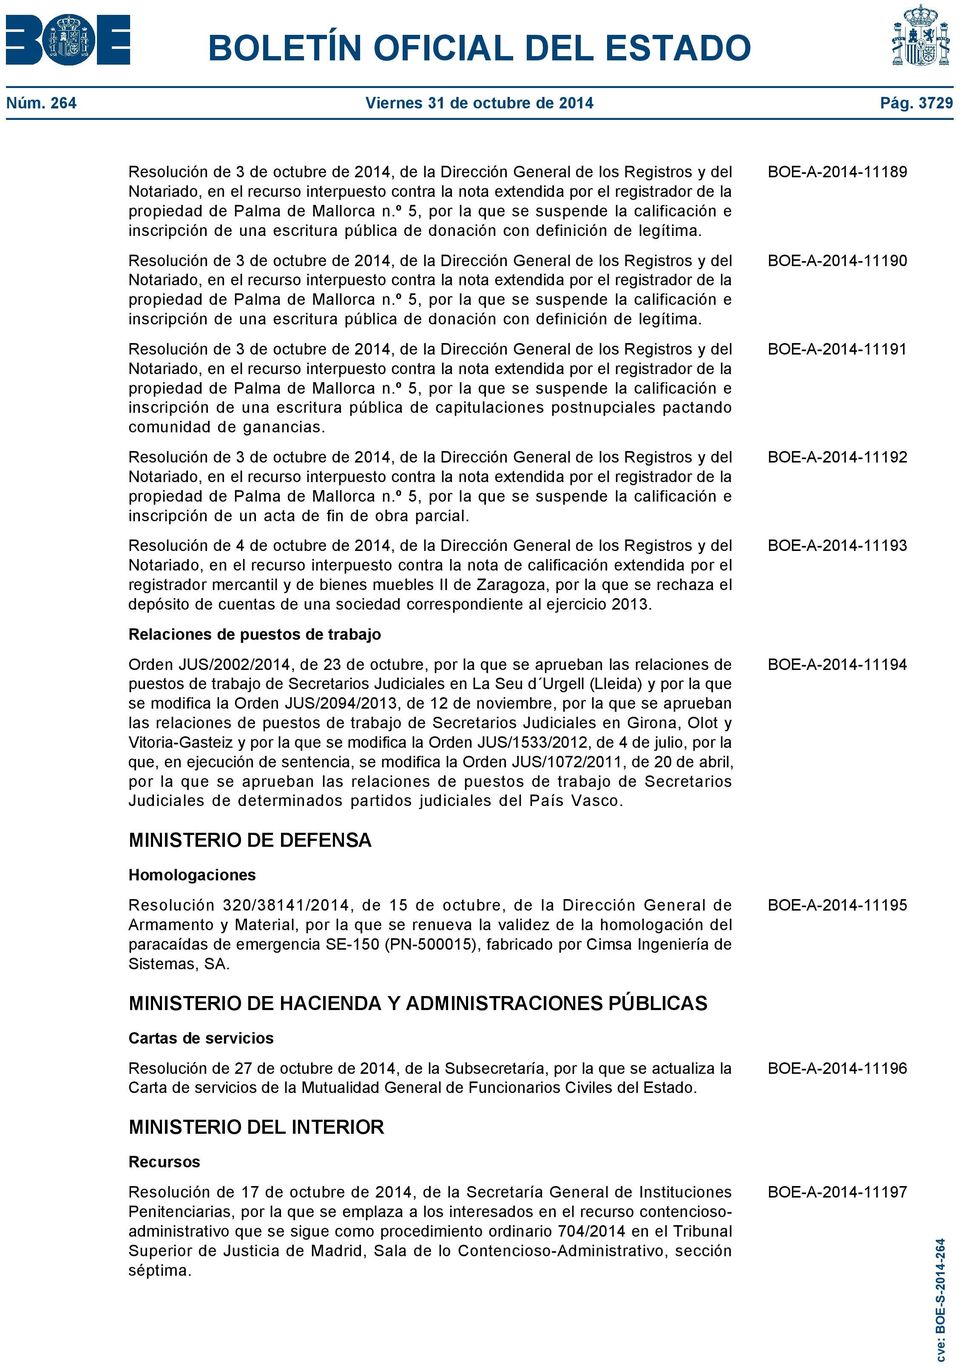 Notariado, en el recurso interpuesto contra la nota extendida por el registrador de la propiedad de Palma de Mallorca n.